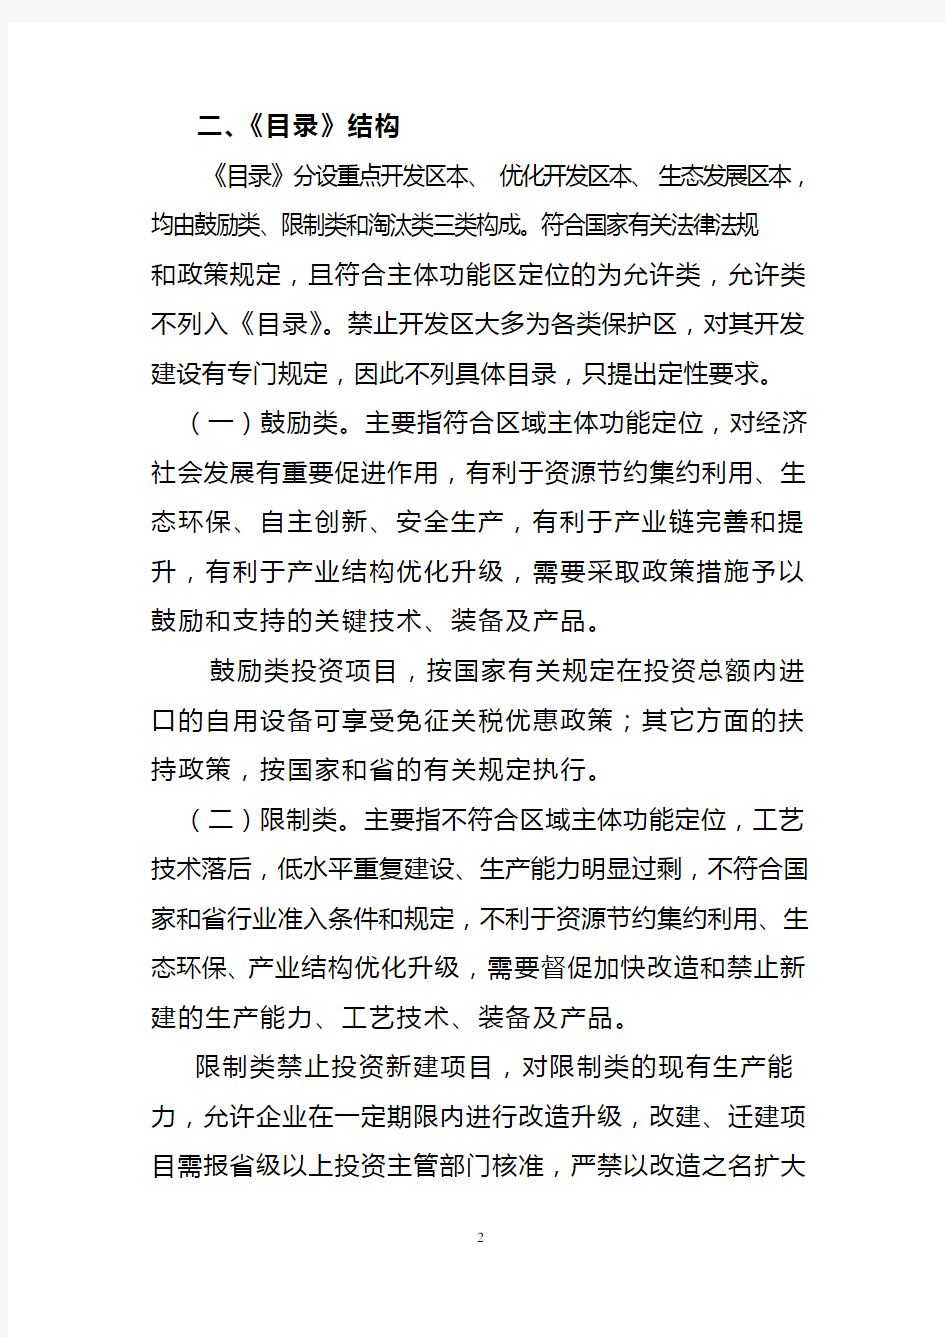 广东省主体功能区产业发展指导目录(2014年)